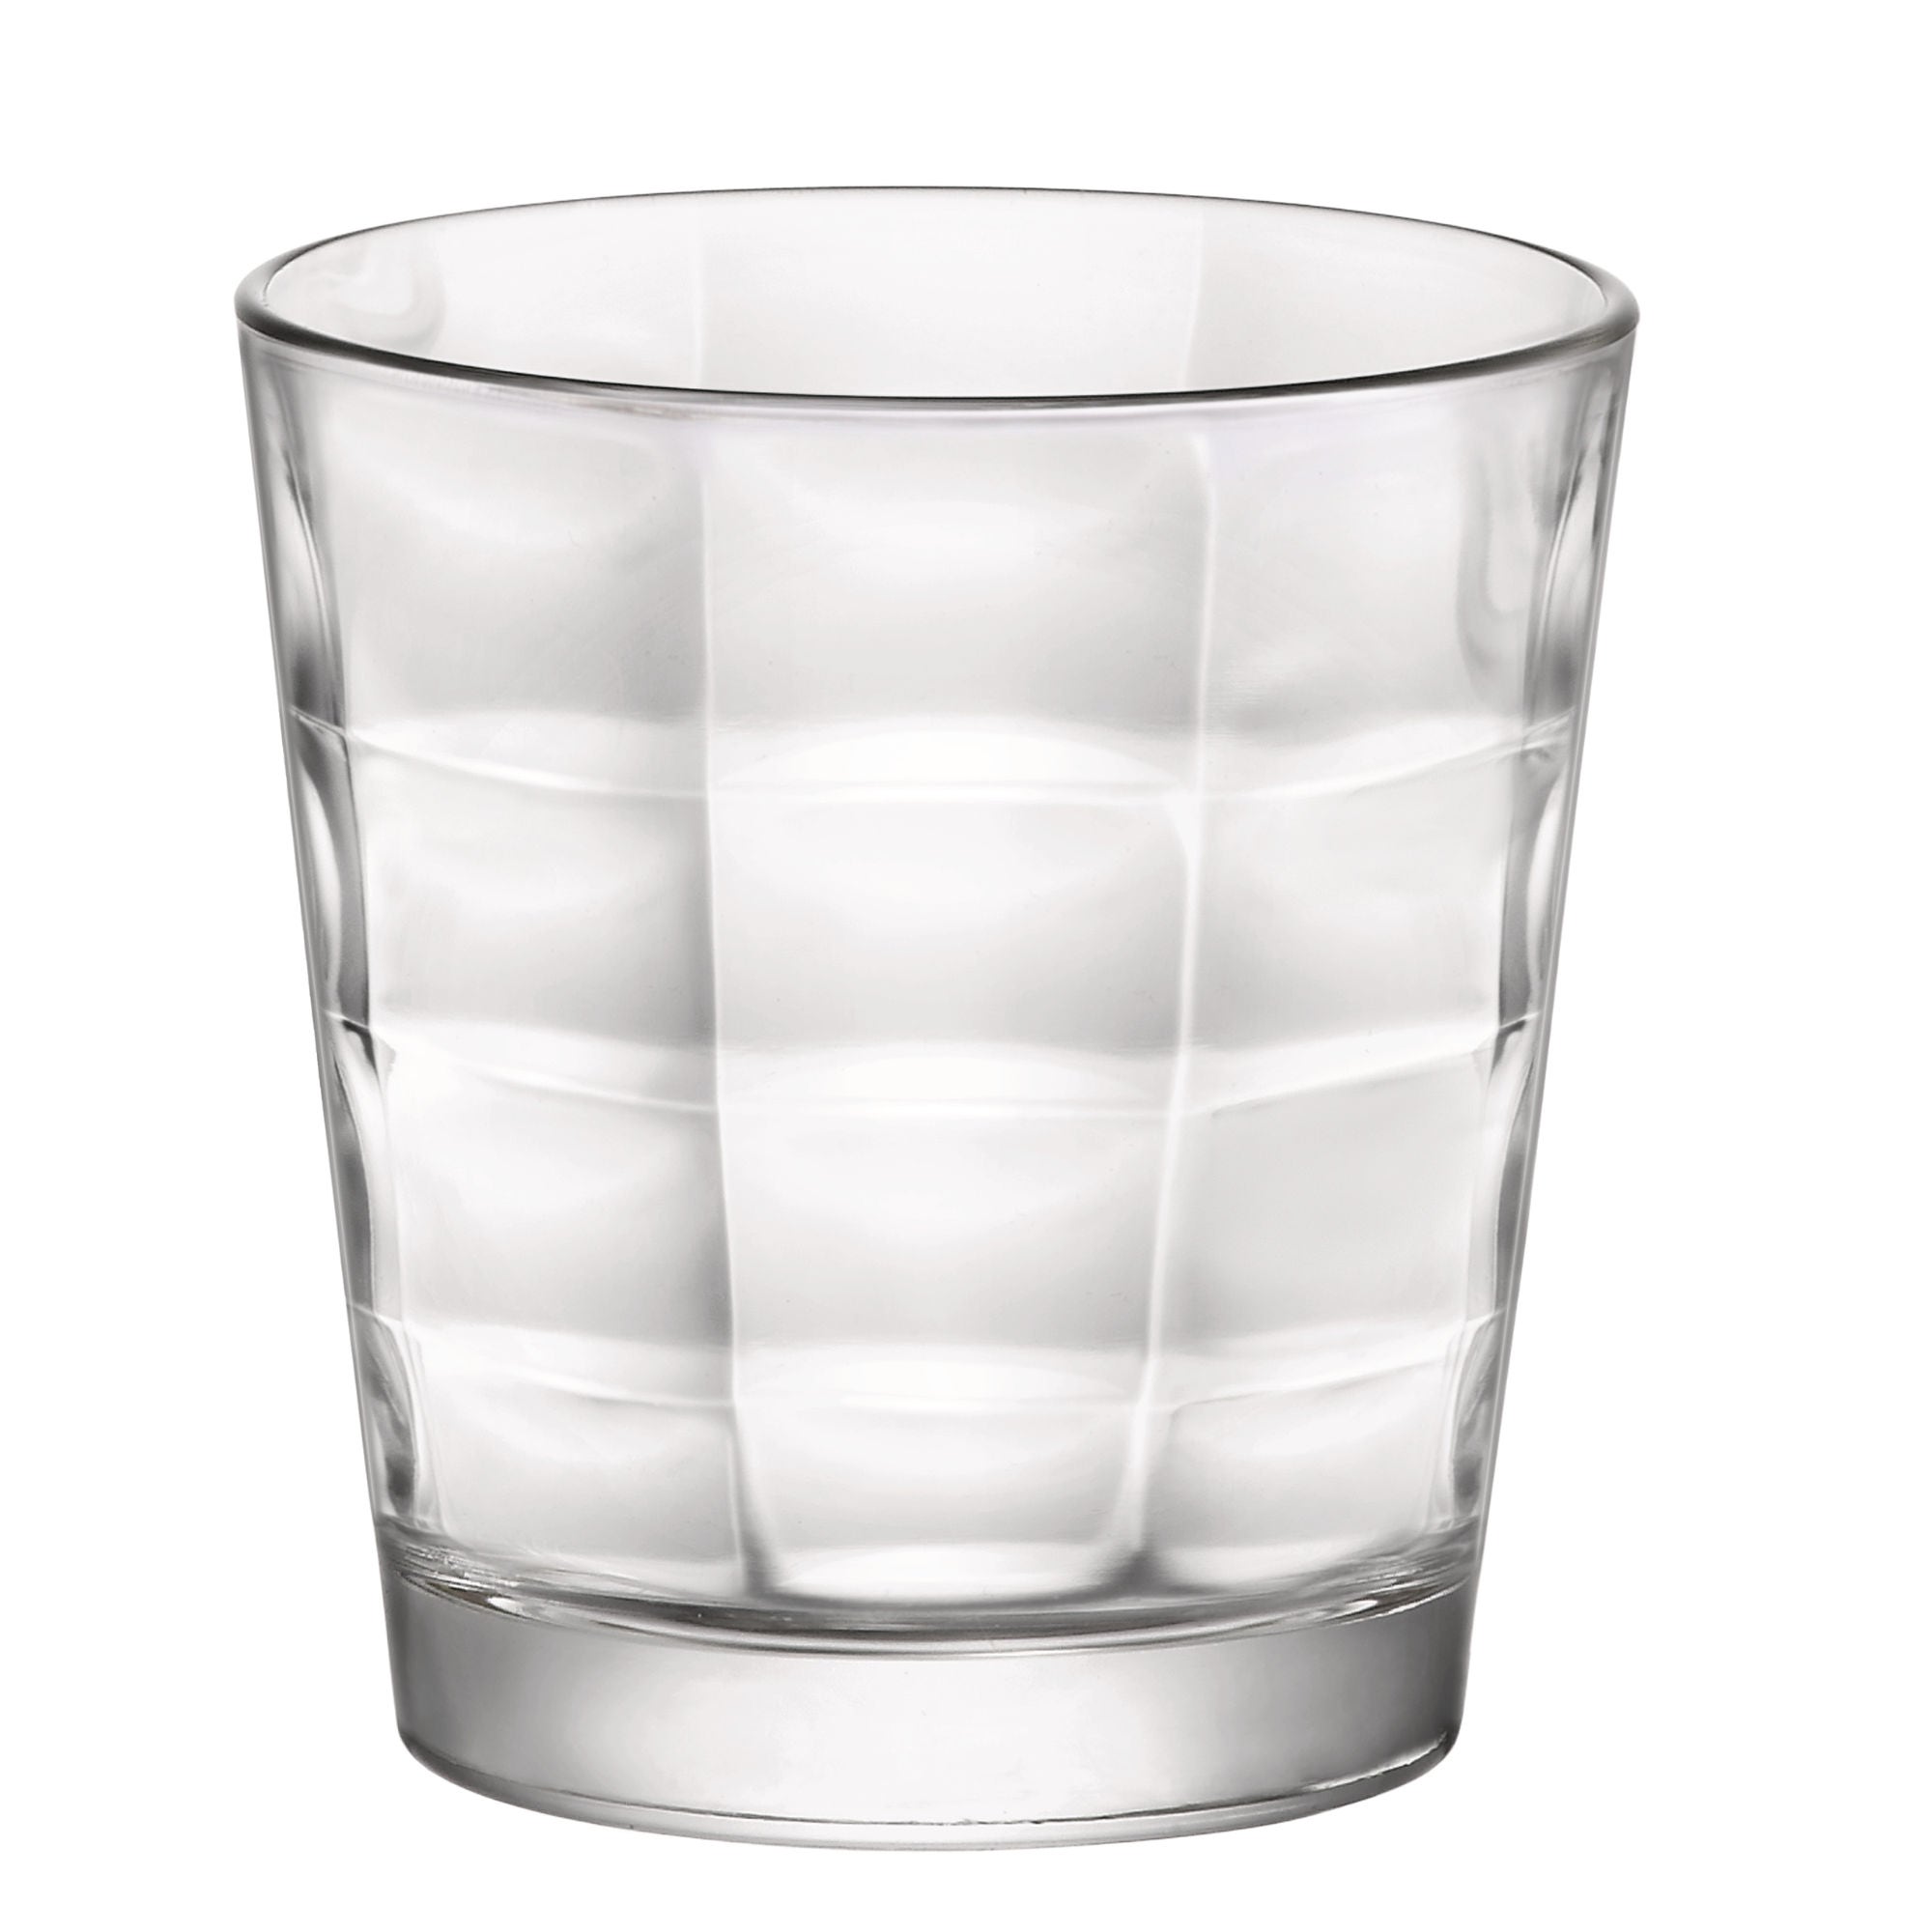 Pahar pentru apa, Cube, sticla transparenta, 240 ml, set 6 bucati